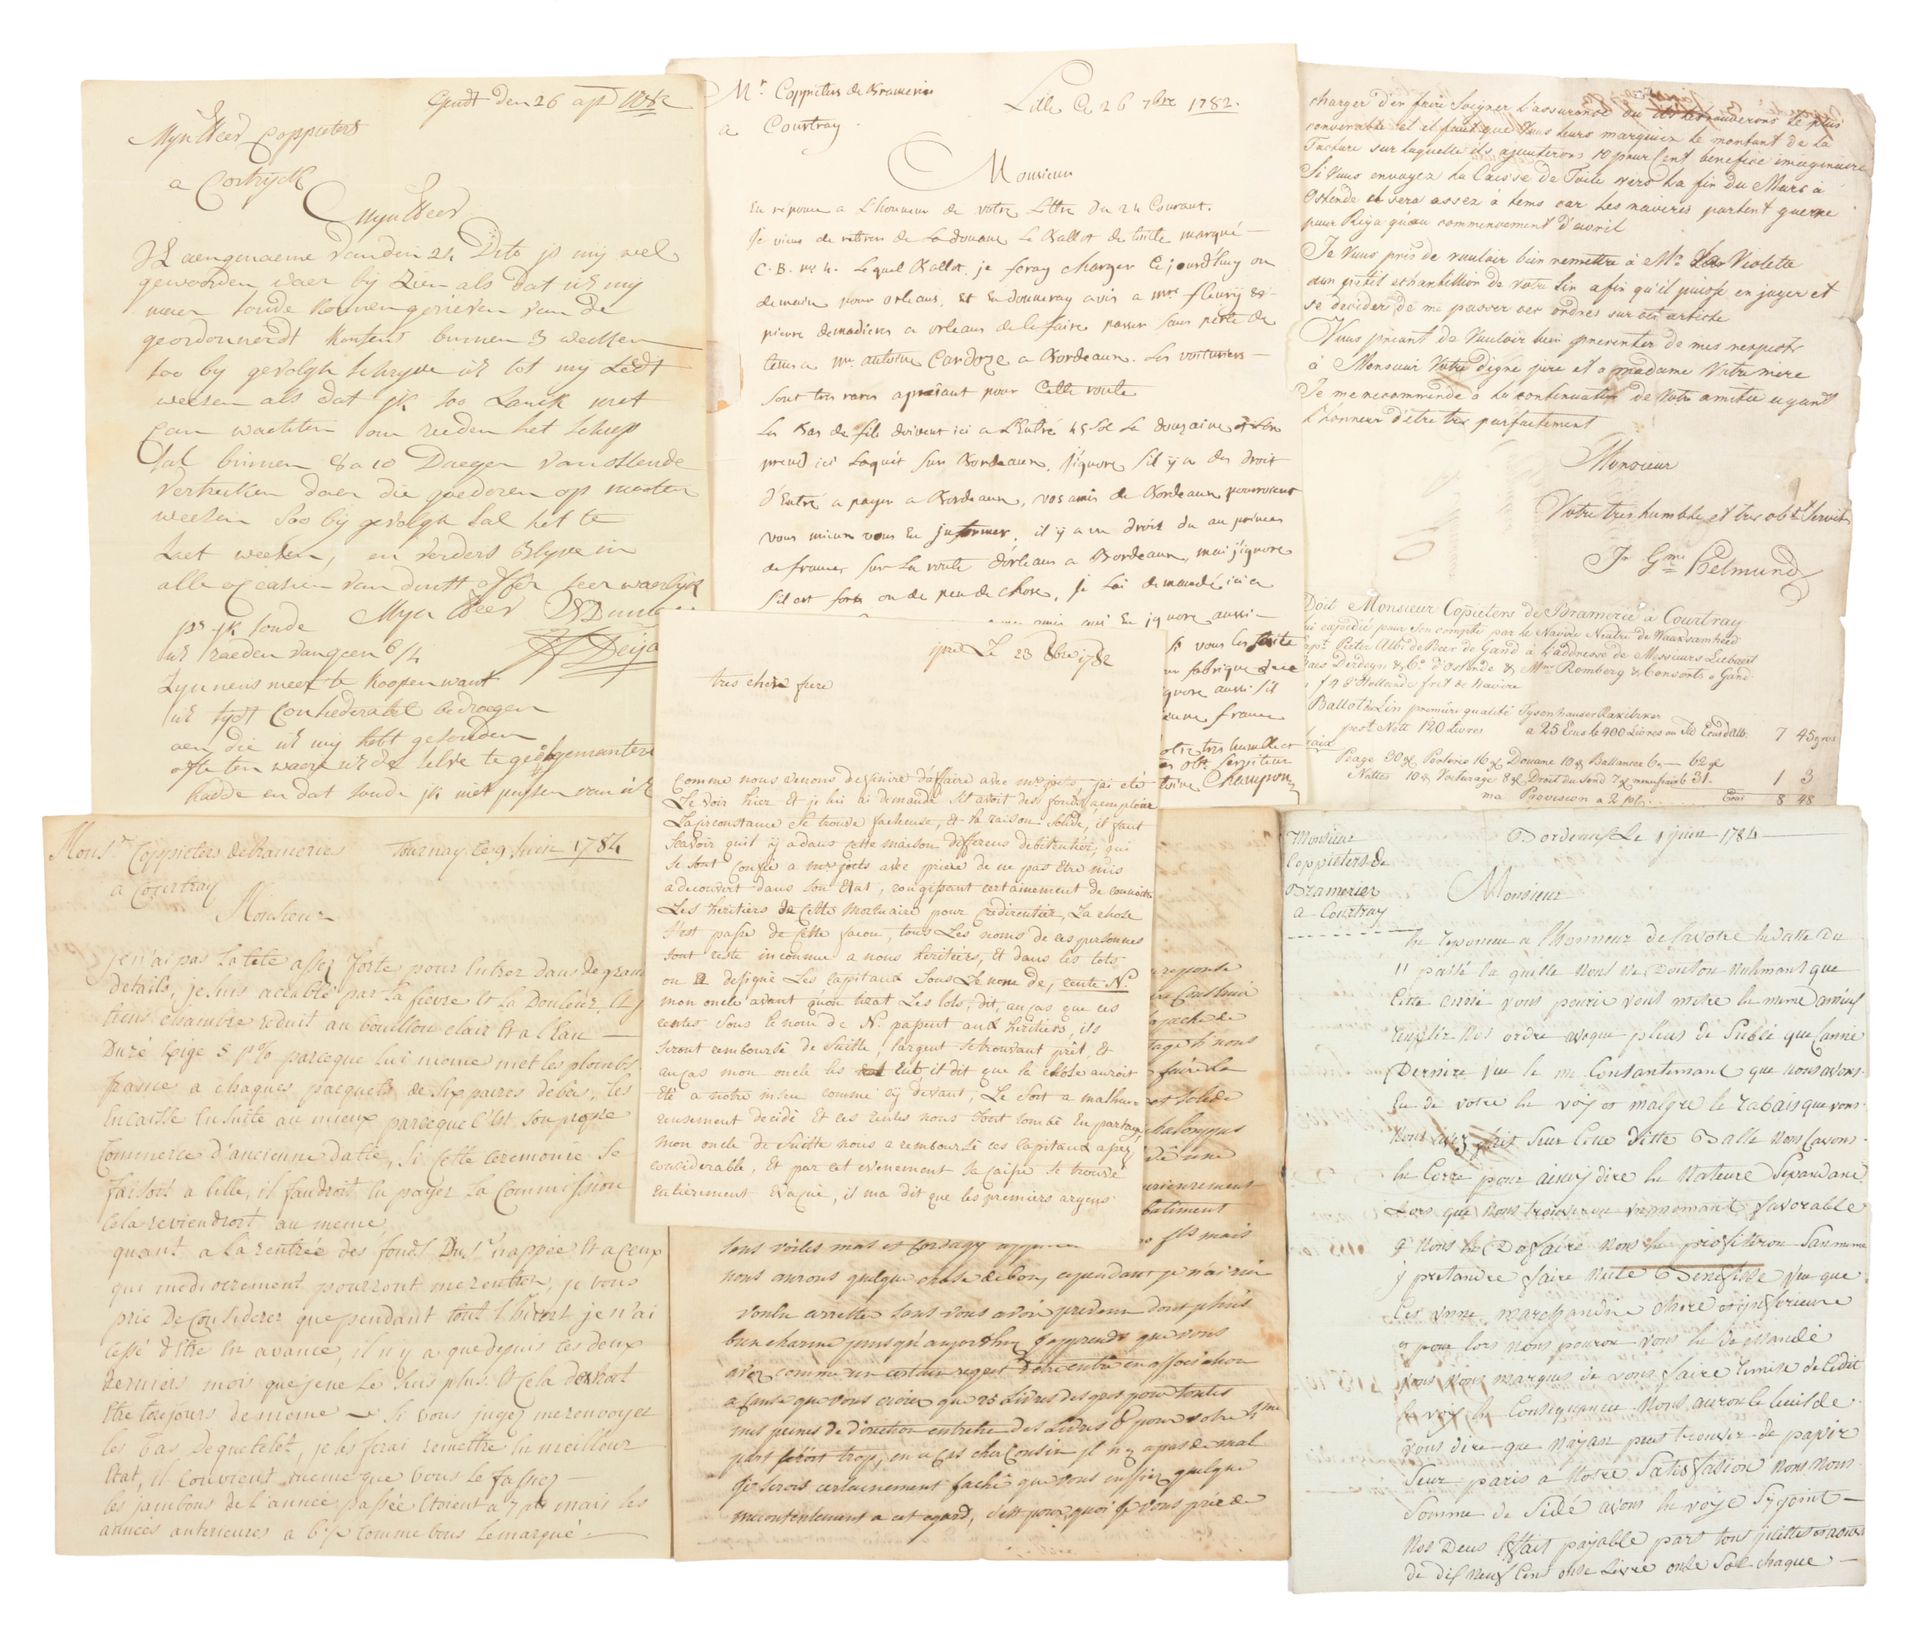 [ARCHIEF - COPPIETERS] Archief met handgeschreven brieven

44 handwritten docume&hellip;